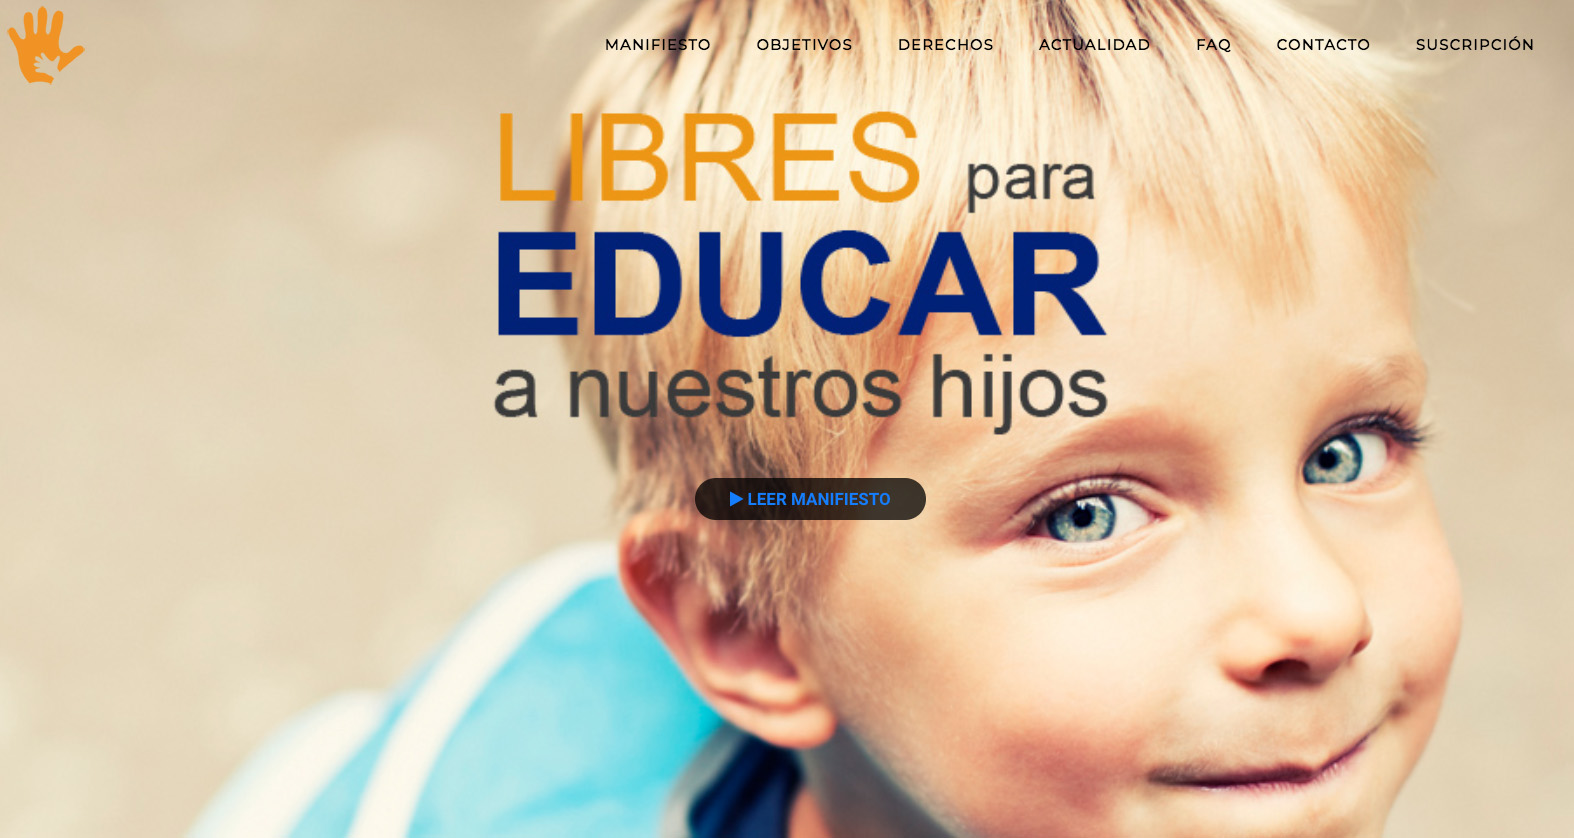 Imagen de la página web del colectivo "Libres para Educar a nuestros hijos"